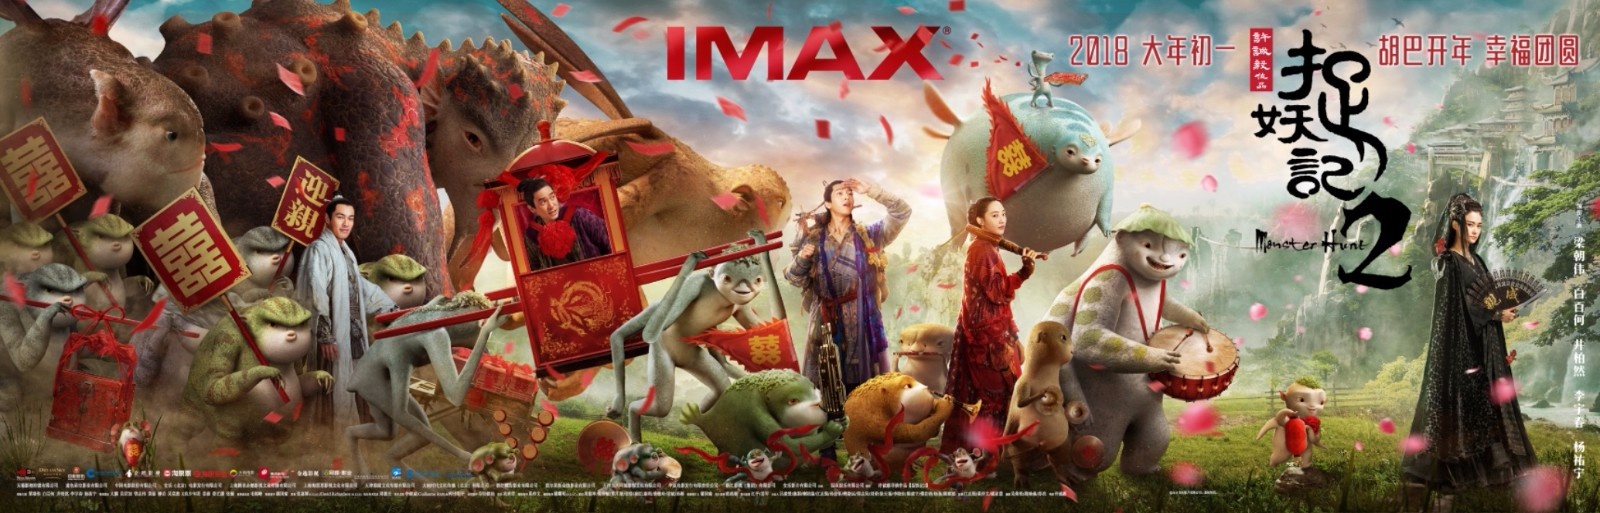 人妖两界奇幻画卷 主创力荐IMAX版《捉妖记2》